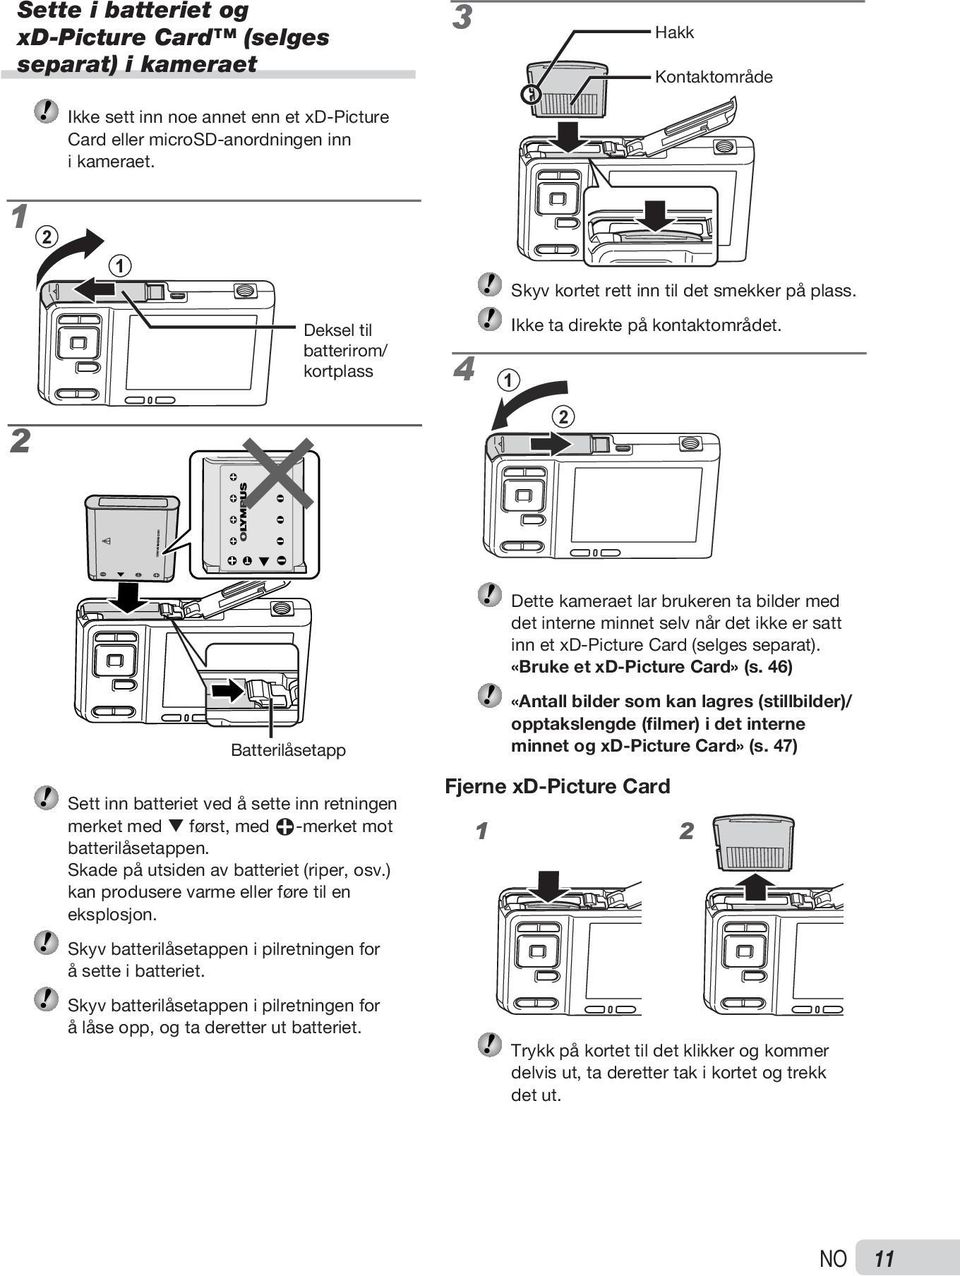 4 1 2 Dette kameraet lar brukeren ta bilder med det interne minnet selv når det ikke er satt inn et xd Picture Card (selges separat). «Bruke et xd-picture Card» (s.